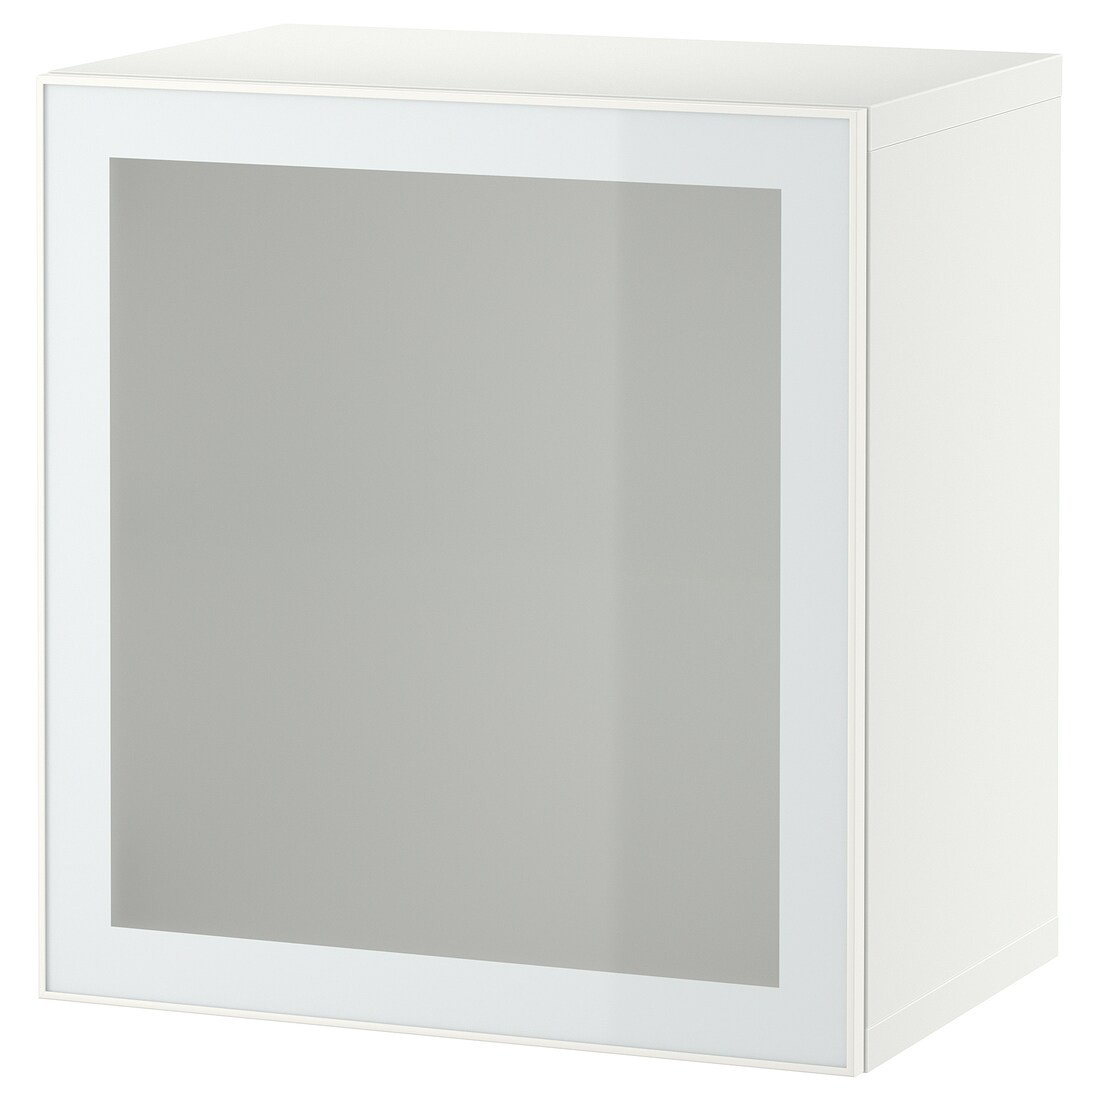 BESTÅ БЕСТО Комбинация настенных шкафов, белый Glassvik / белый / светло-зеленый матовое стекло, 60x42x64 см